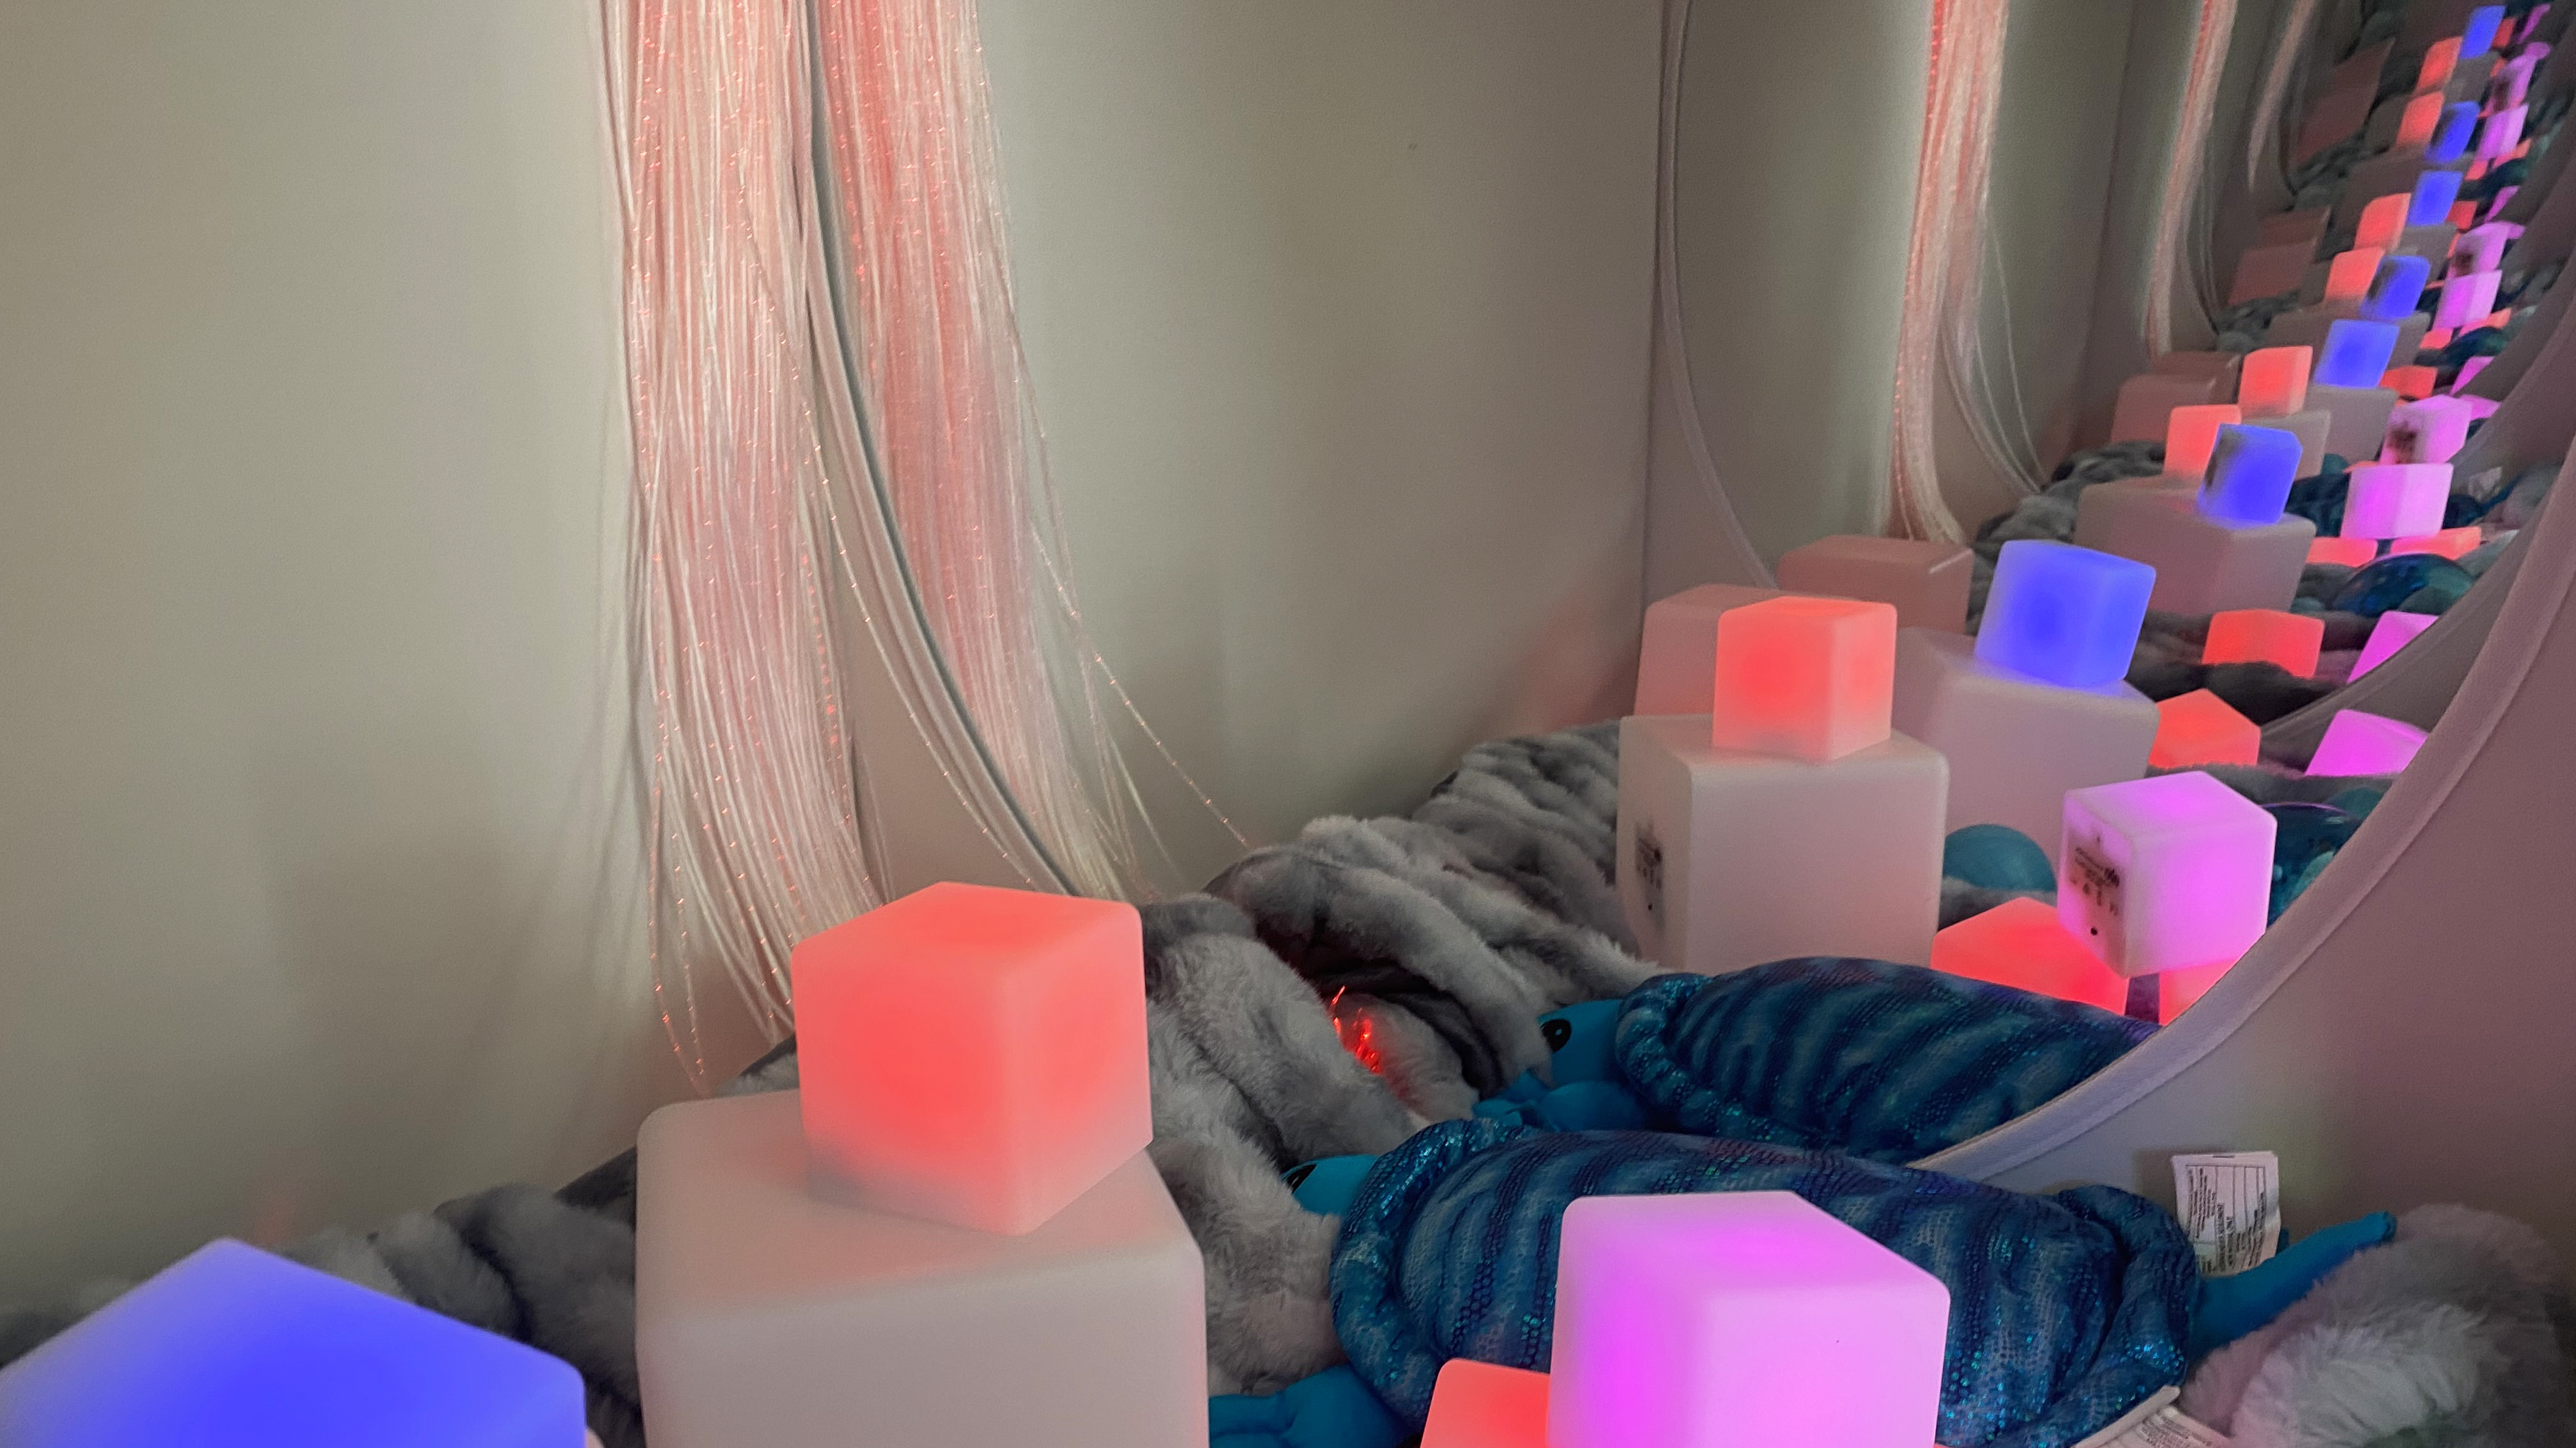 Ett kryp in med lugnade lysande kuber i olika färger, speglar och lampa